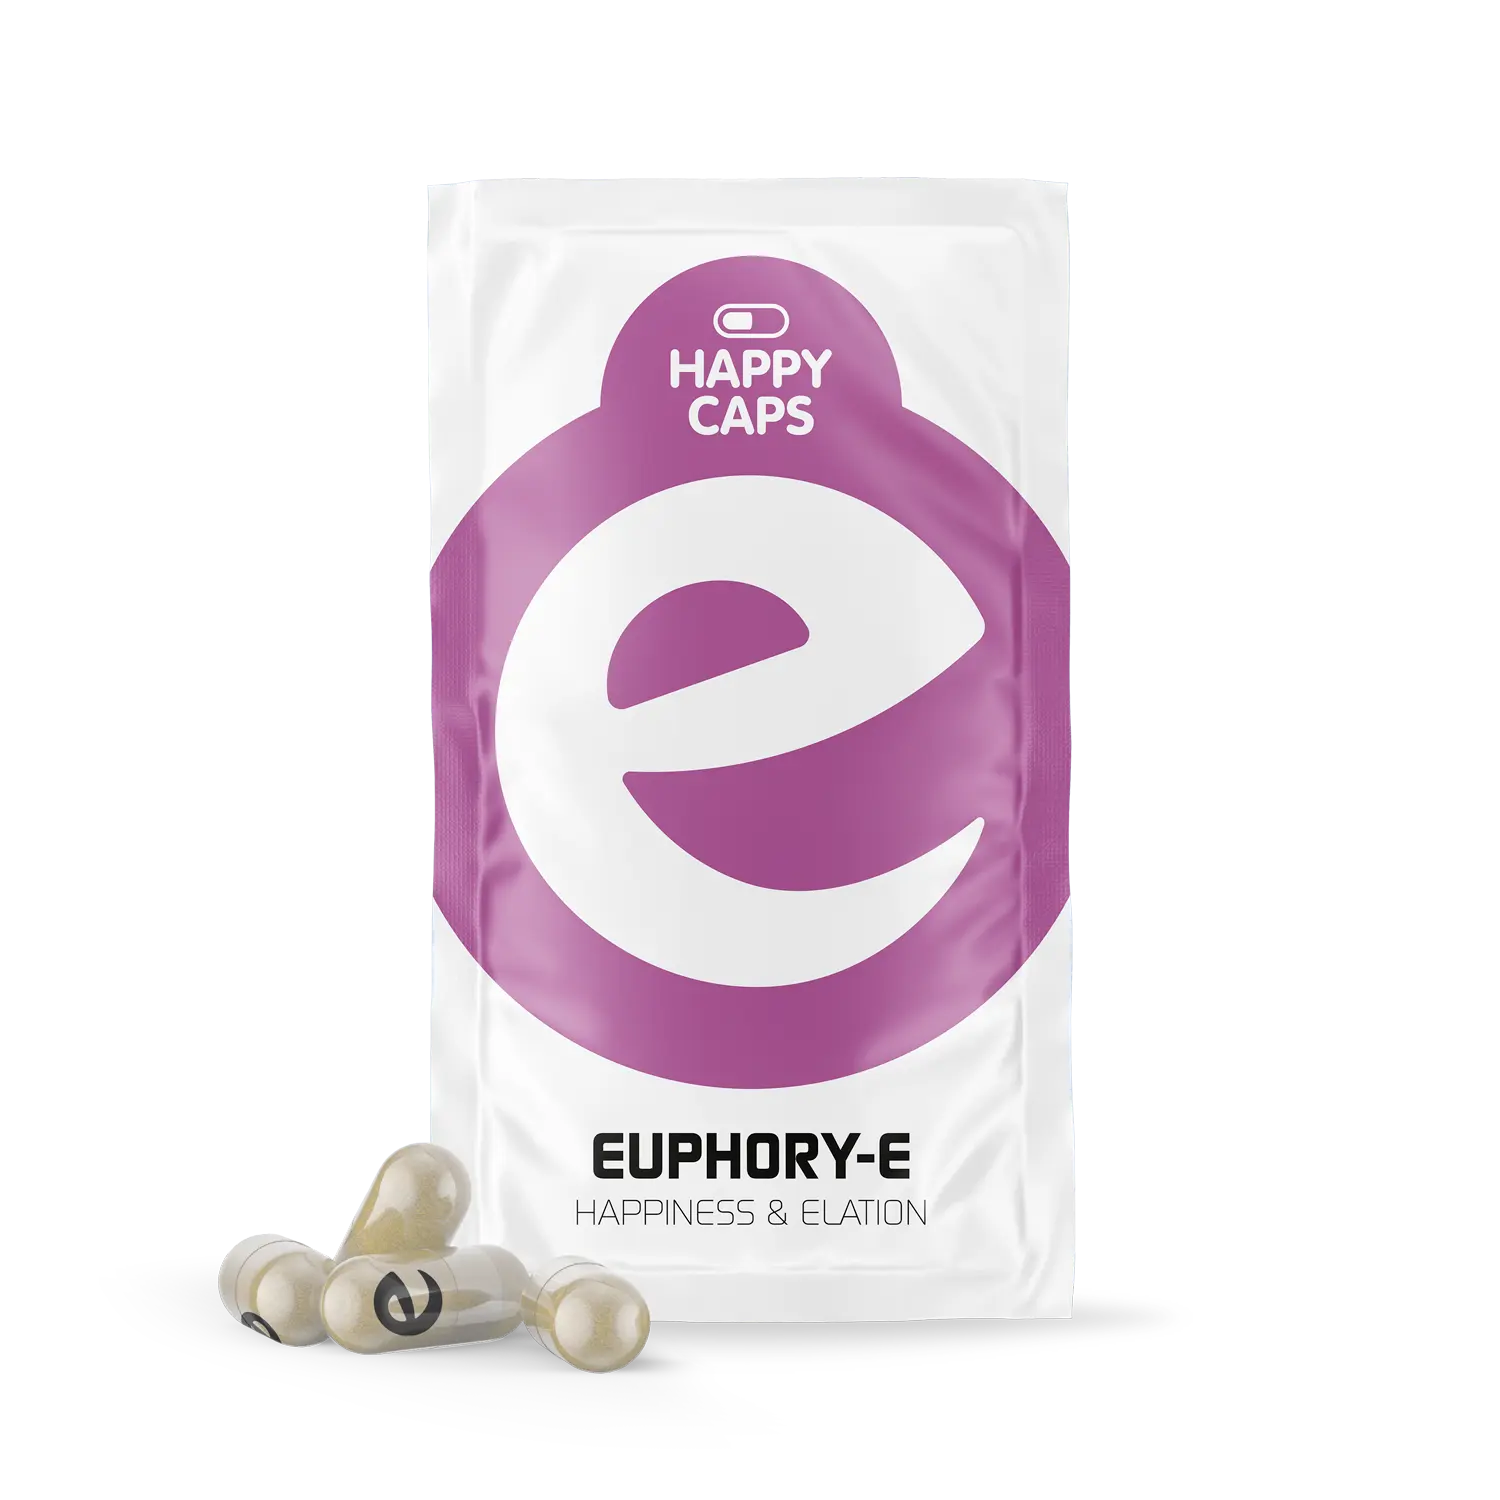 Euphory-e